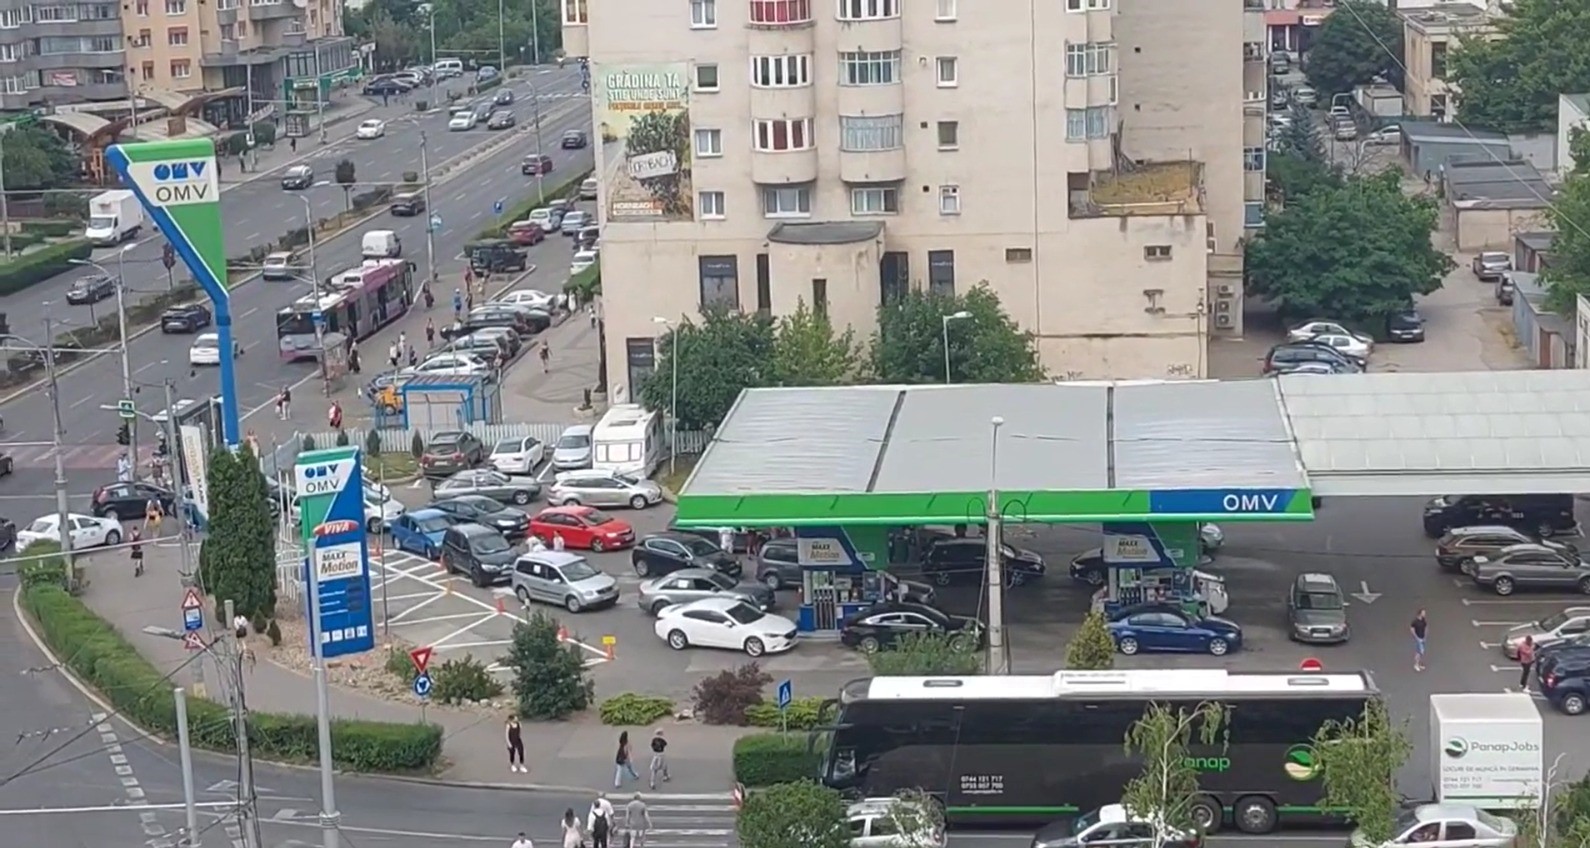 Zeci de șoferi nemulțumiți de prețurile ridicate ale carburanților s-au întâlnit, joi, 30 iunie, la benzinăria OMW din cartierul Mărăști/ Foto: captură ecran video